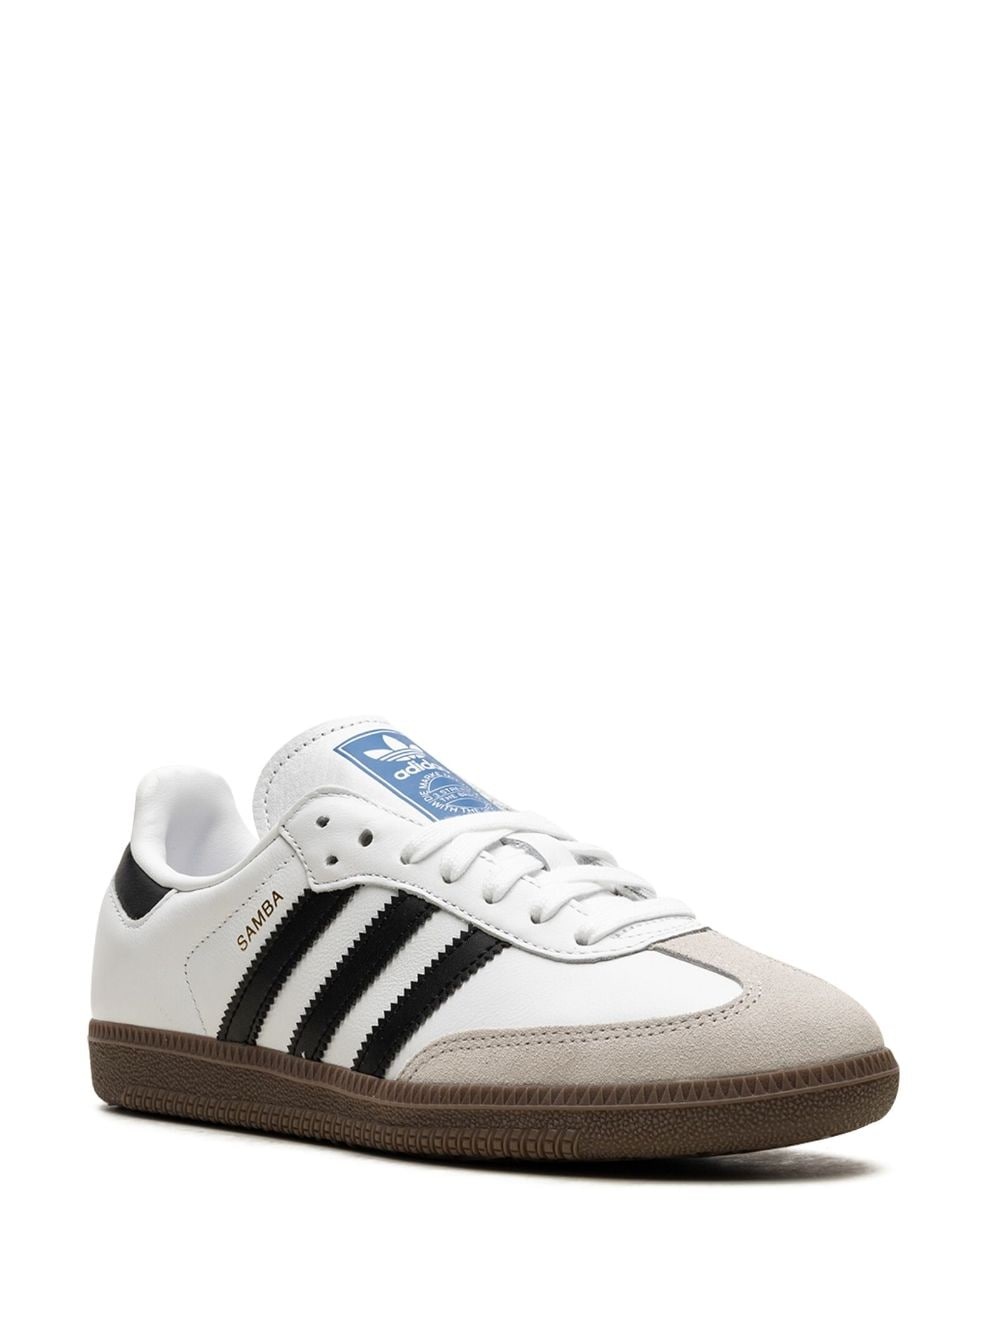 Samba OG "White" sneakers - 2